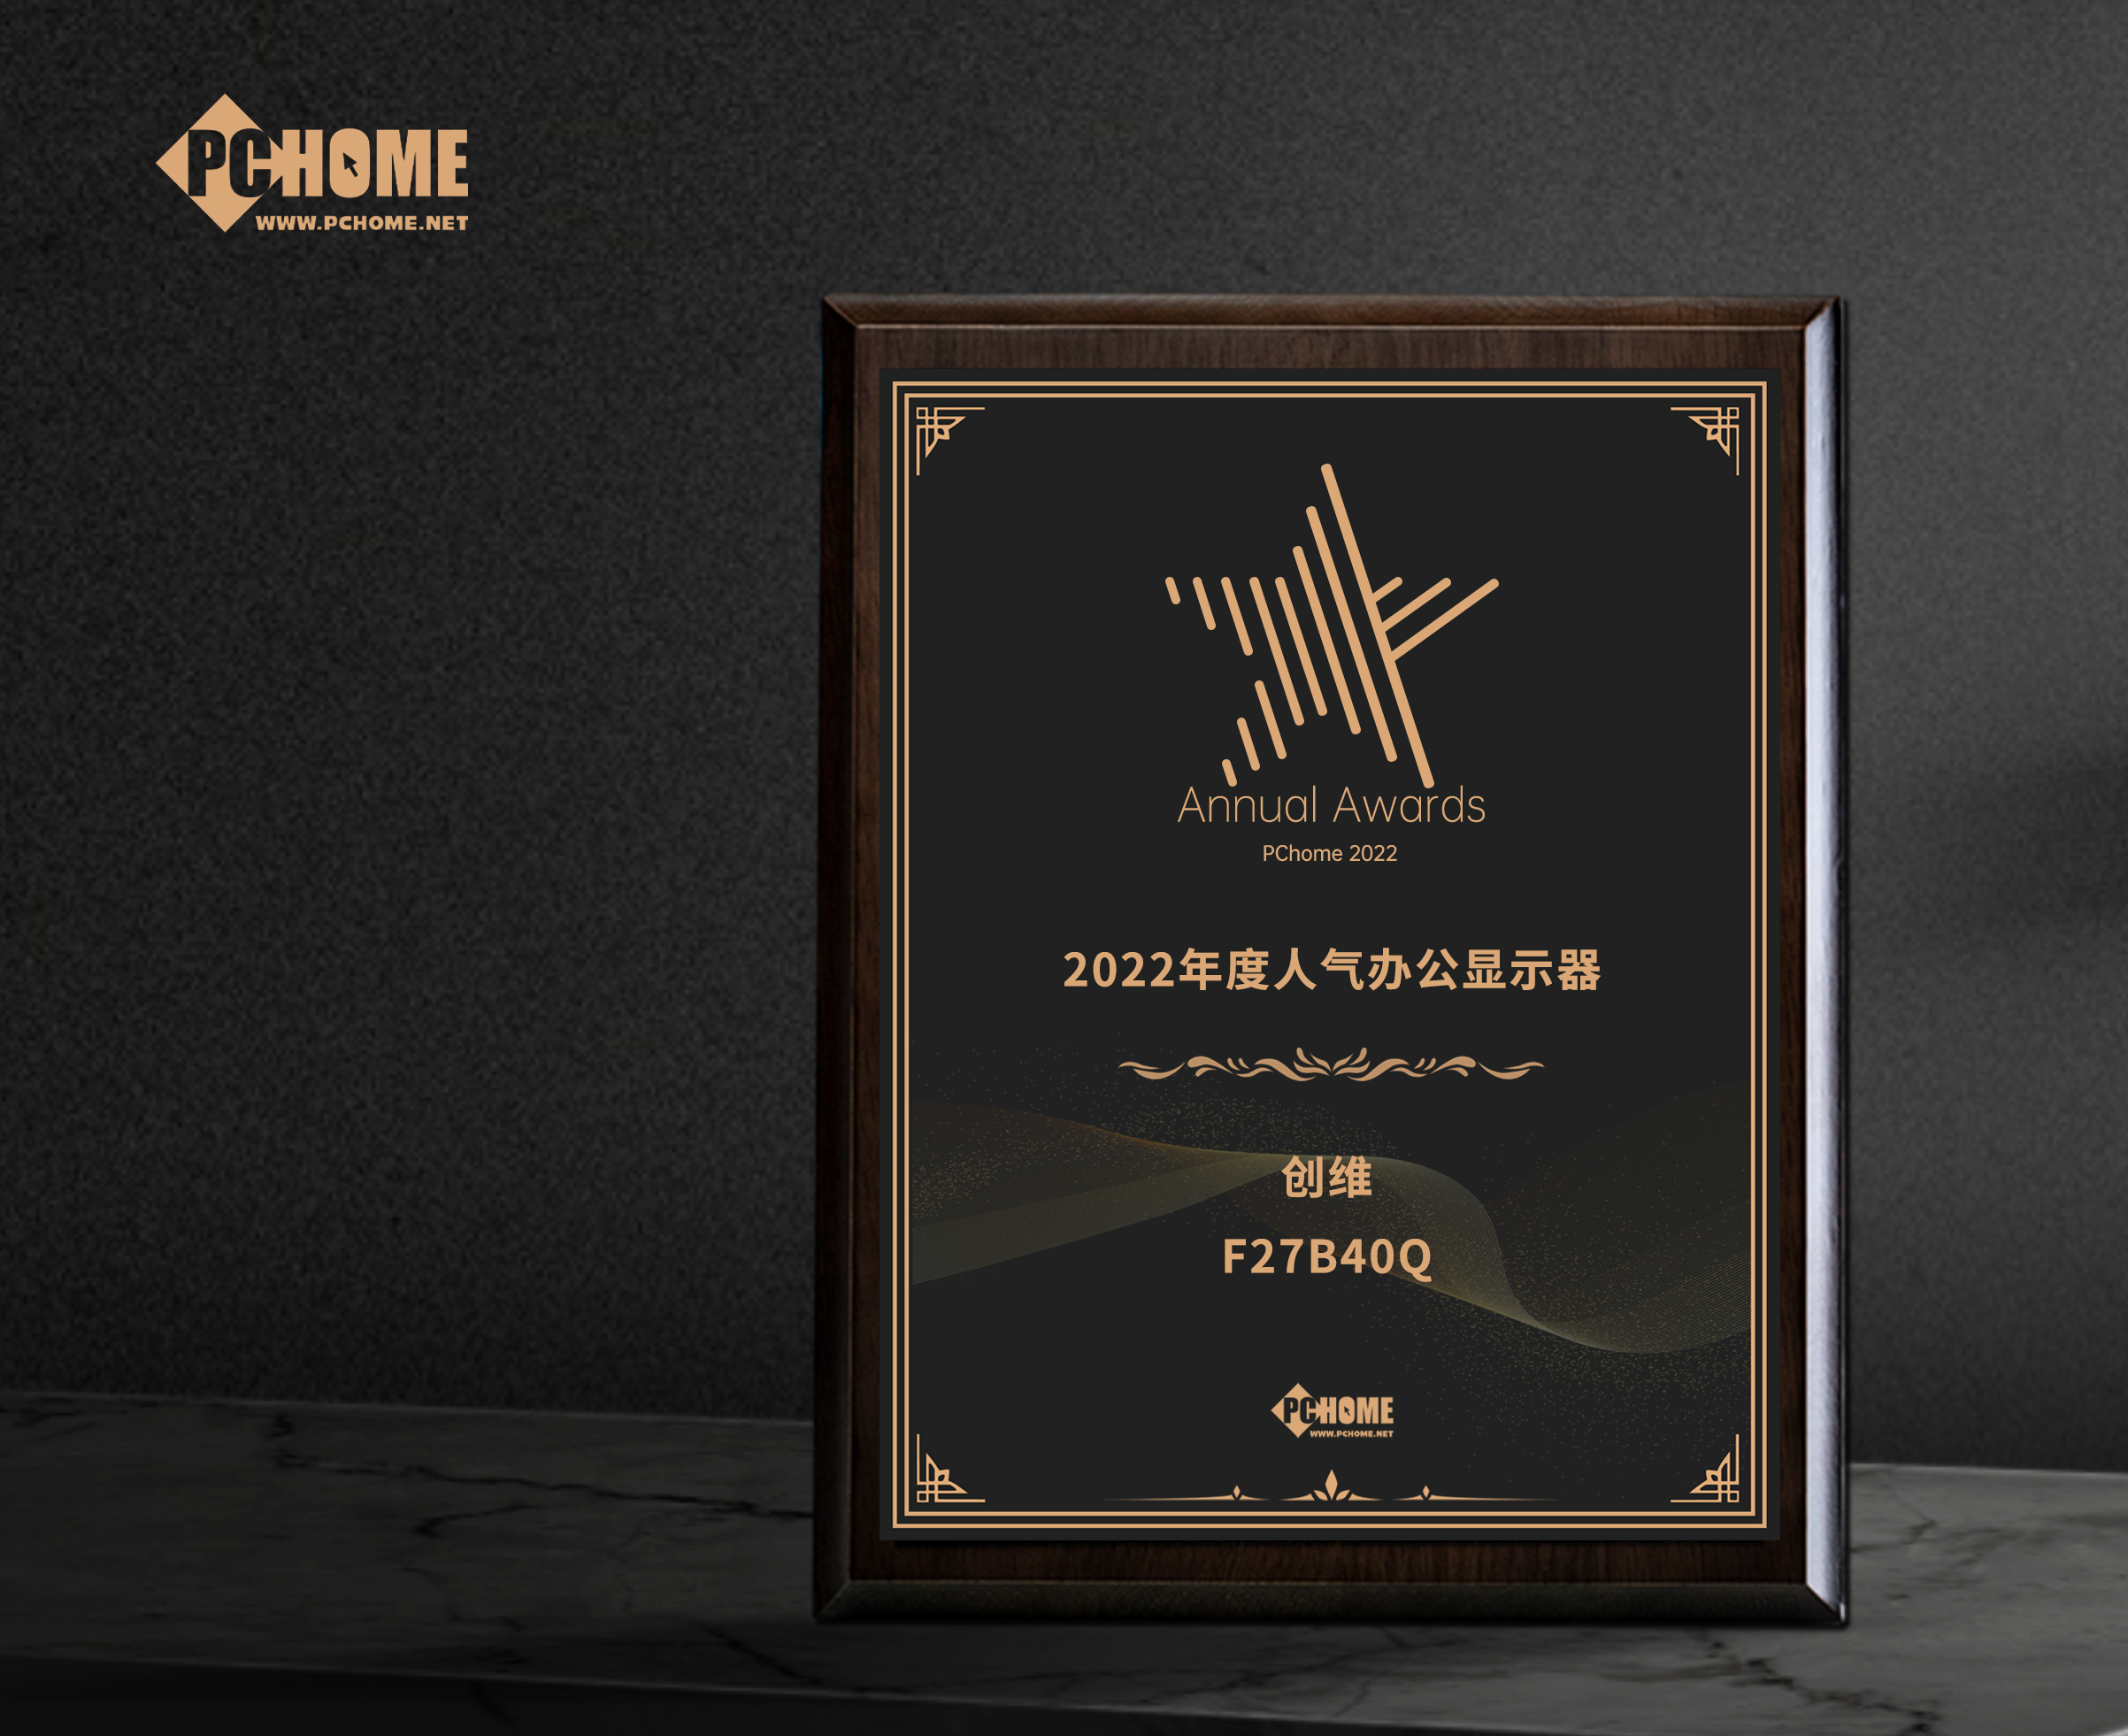 安慶市創維F27B40Q獲得PChome2022年度人氣辦公顯示器獎項